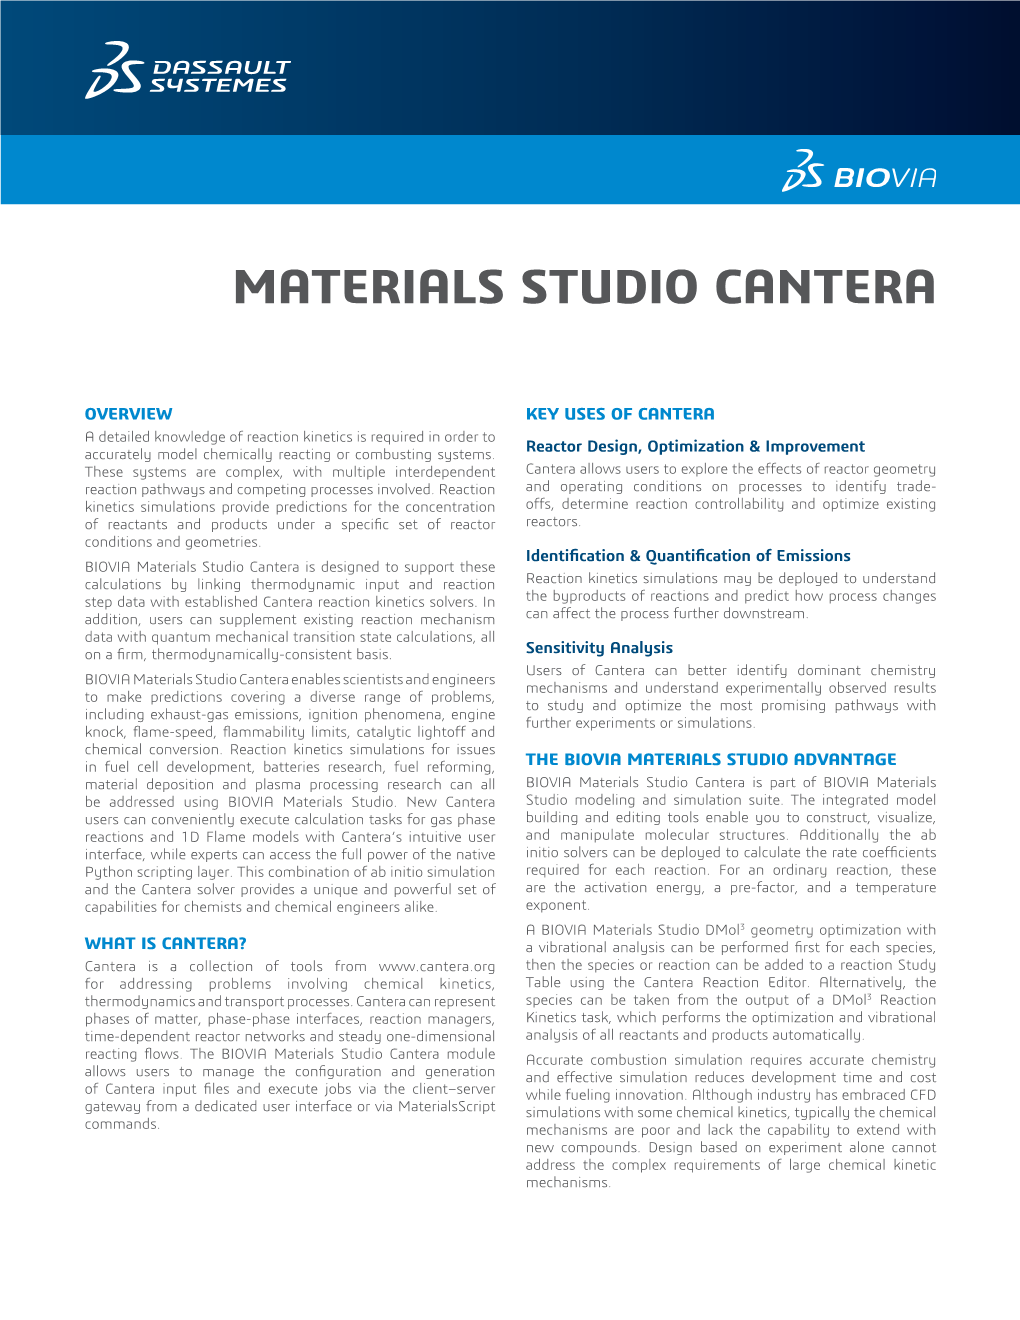 BIOVIA Materials Studio CANTERA